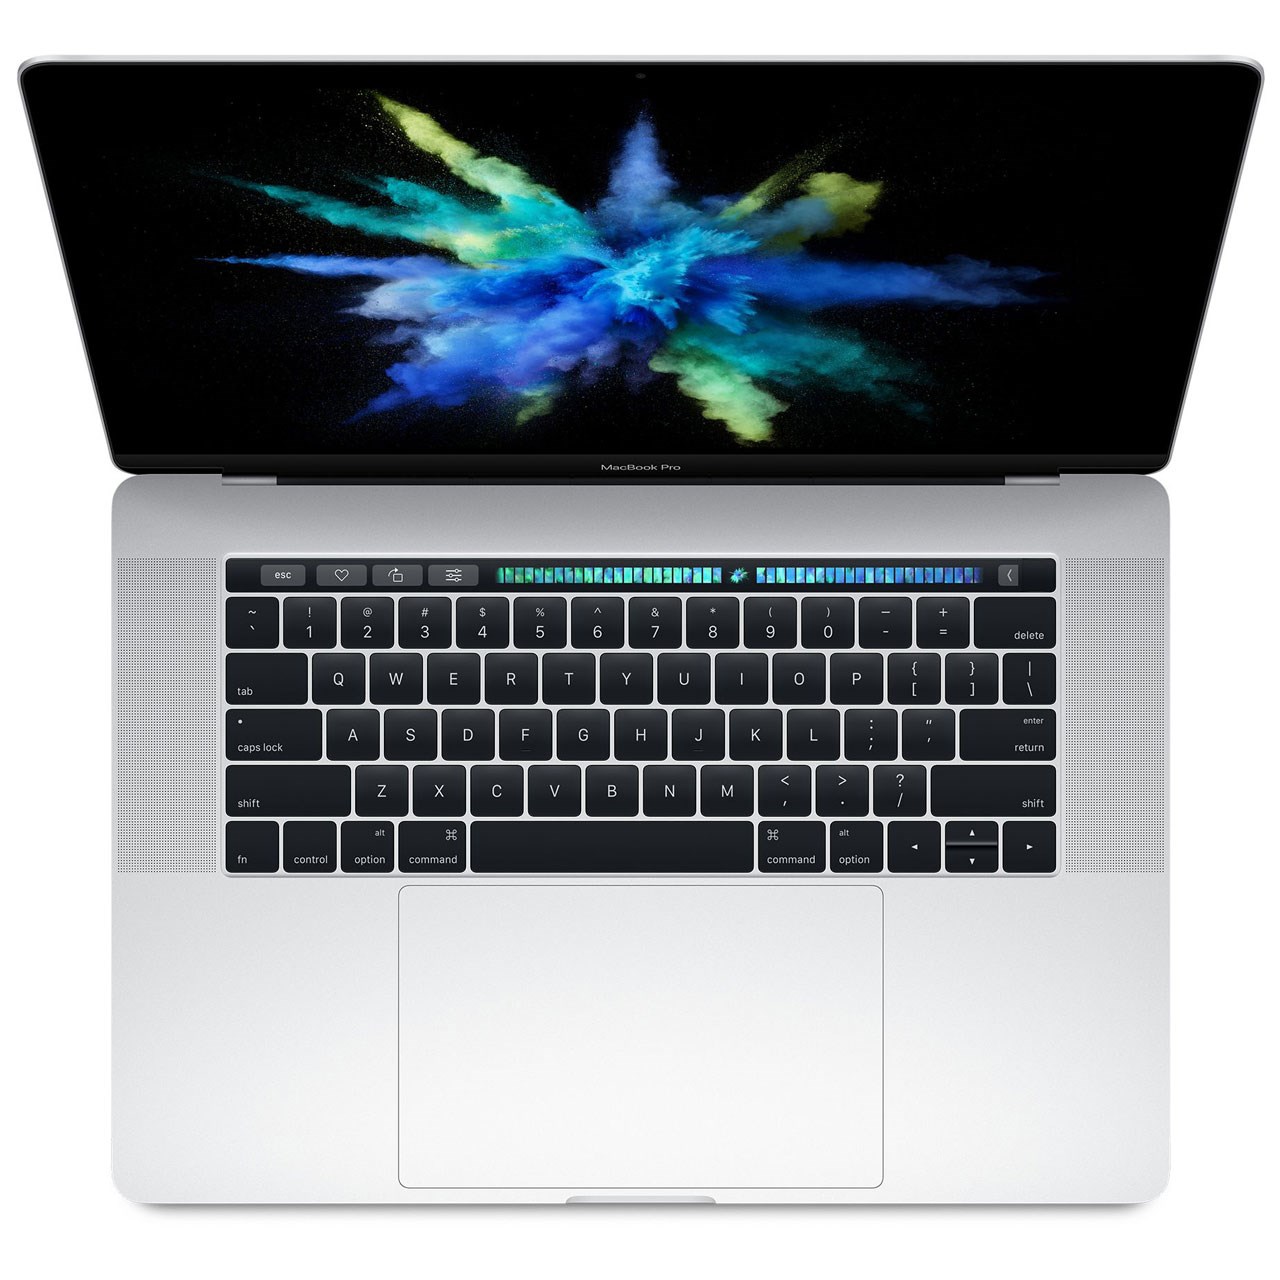 لپ تاپ 15 اینچی اپل مدل 2017 MacBook Pro MPTV2 همراه با تاچ بار